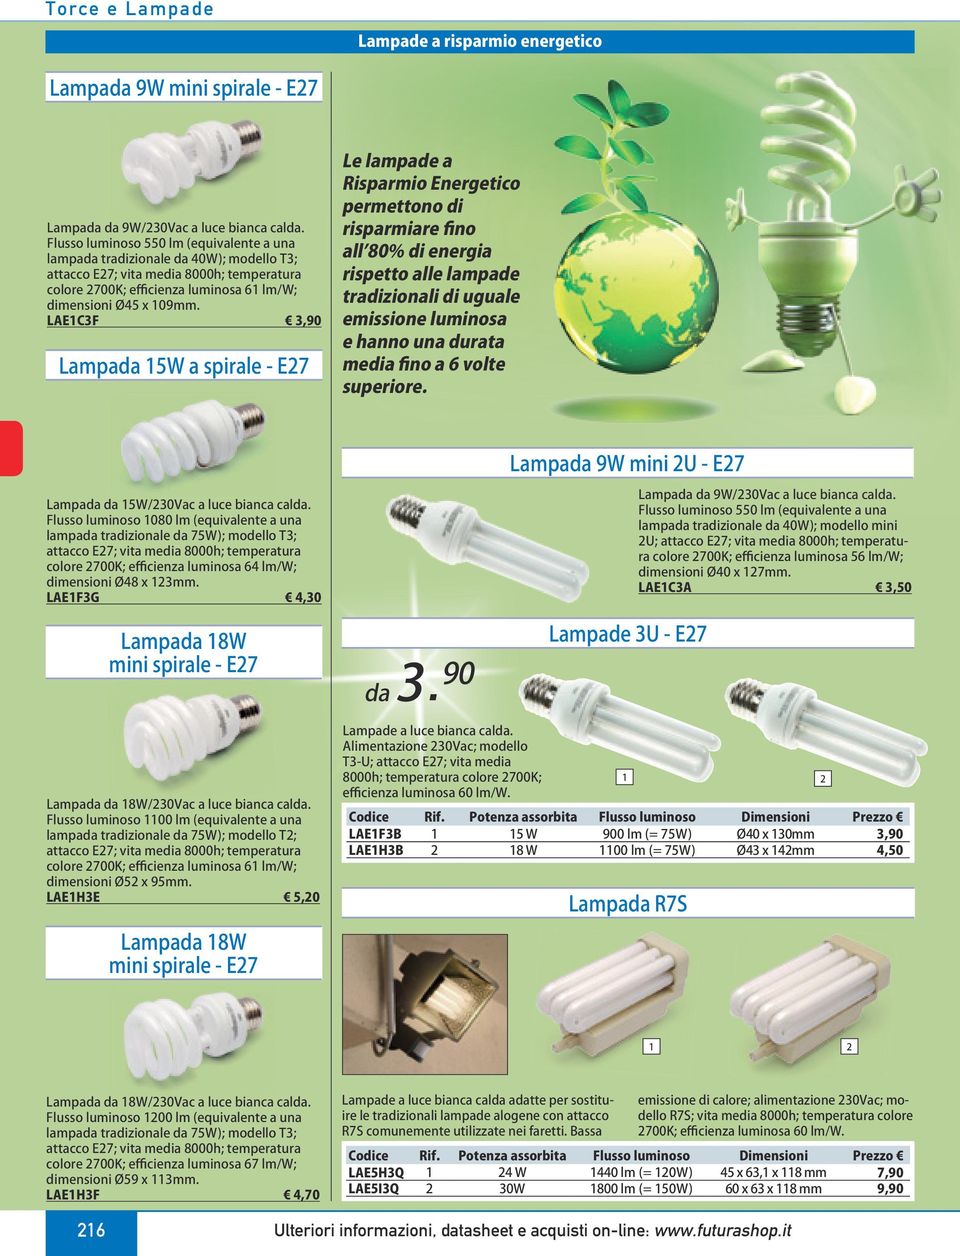 LAEC3F 3,90 Lampada 5W a spirale - E7 Le lampade a Risparmio Energetico permettono di risparmiare fino all 80% di energia rispetto alle lampade tradizionali di uguale emissione luminosa e hanno una